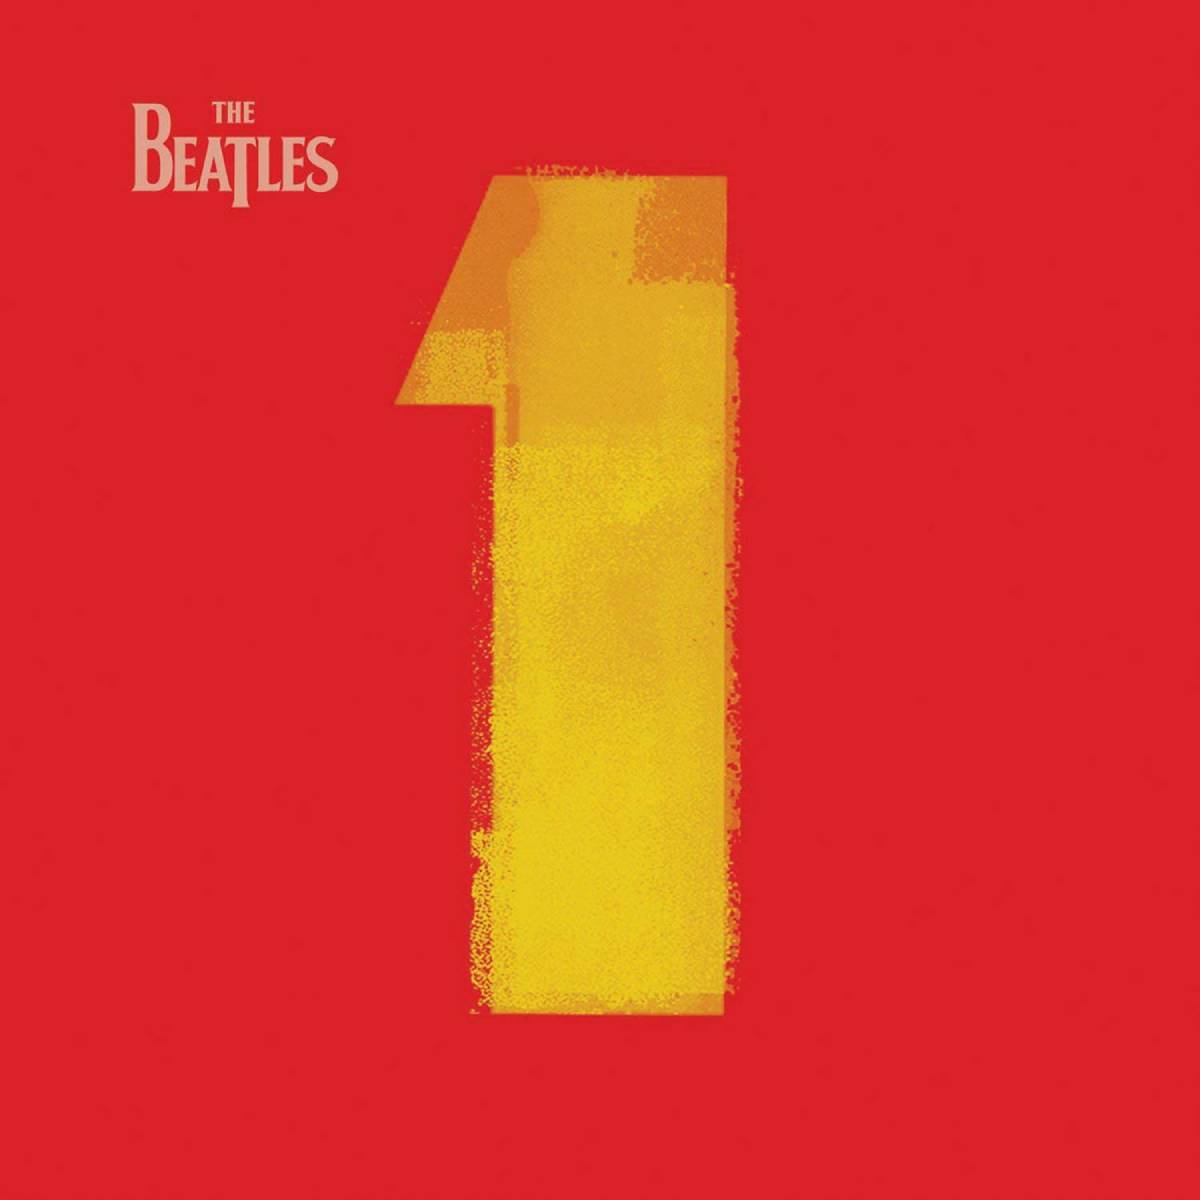 Portada del recopilatorio de los Beatles titulado "1"